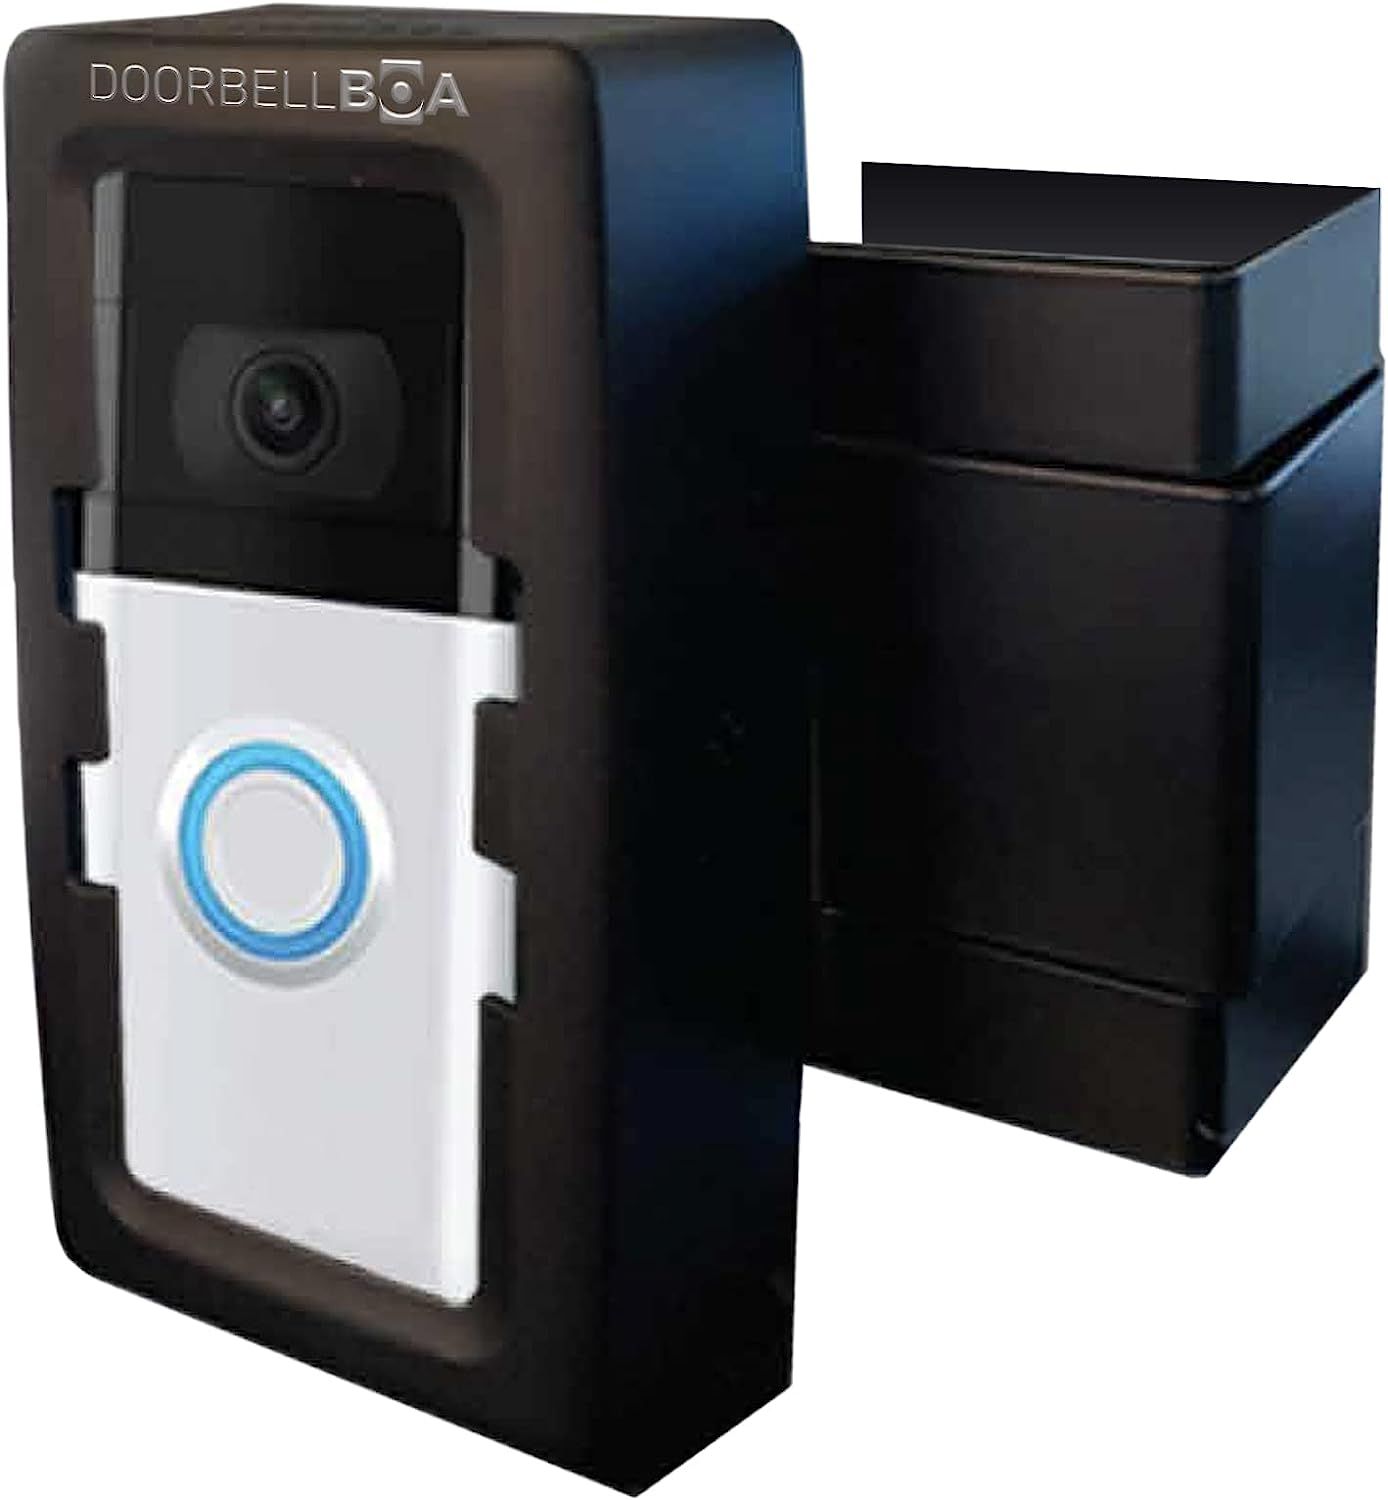 DoorbellBoa Anti-Theft Video Doorbell Door Mount, No Tools or Installation, Mounts Securely in Se... | Amazon (US)